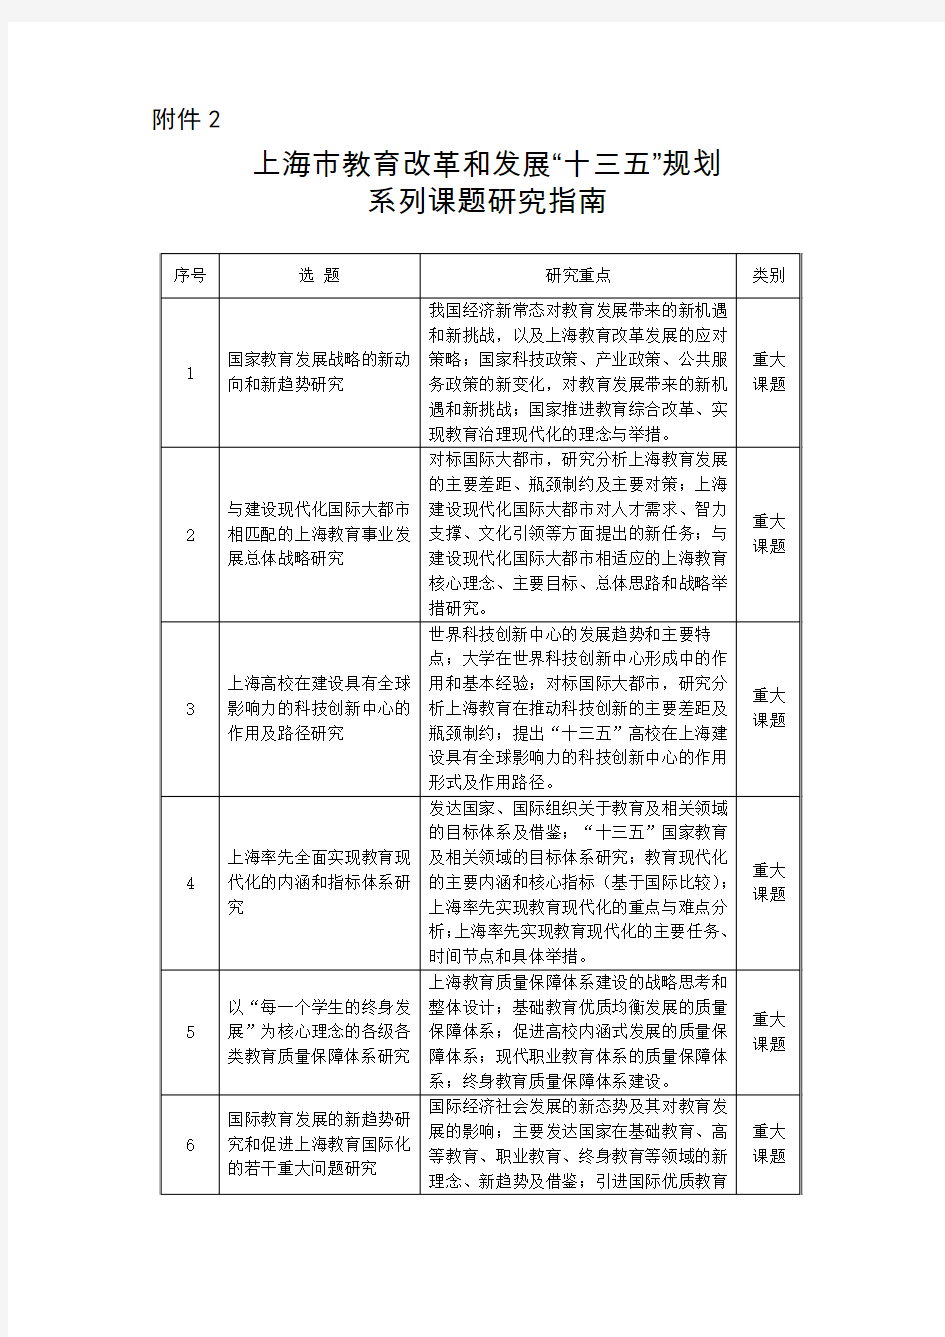 上海市教育改革和发展“十三五”规划系列课题研究指南doc